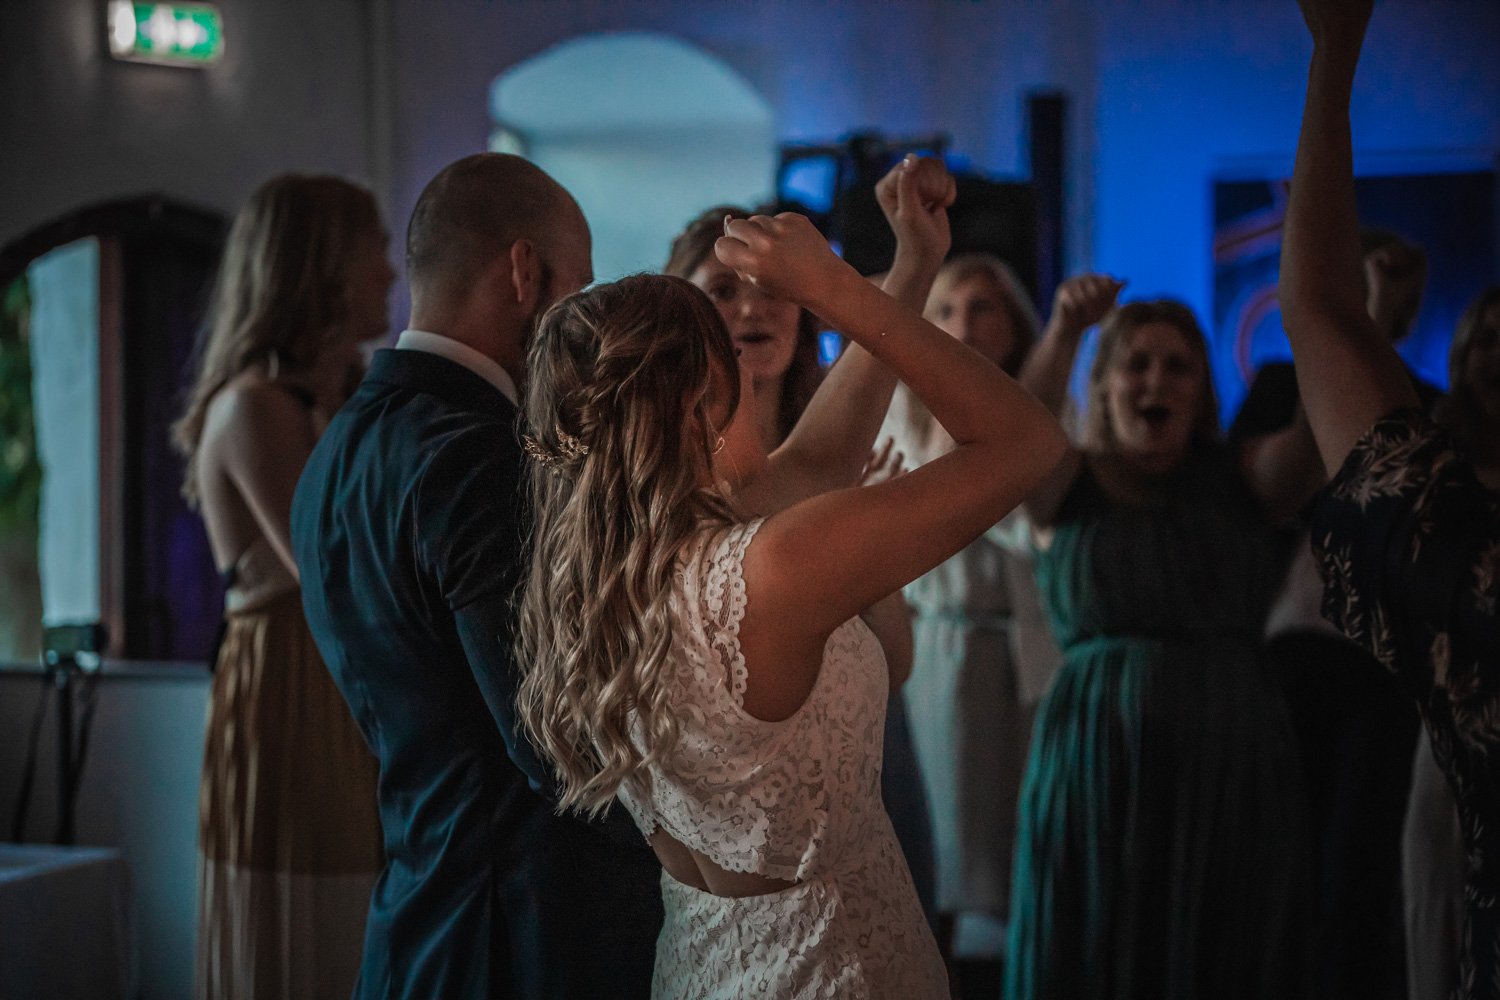  Efter middag och bröllopstårta kan bar och dans ta vid Foto: Fredrik Mårtensson 